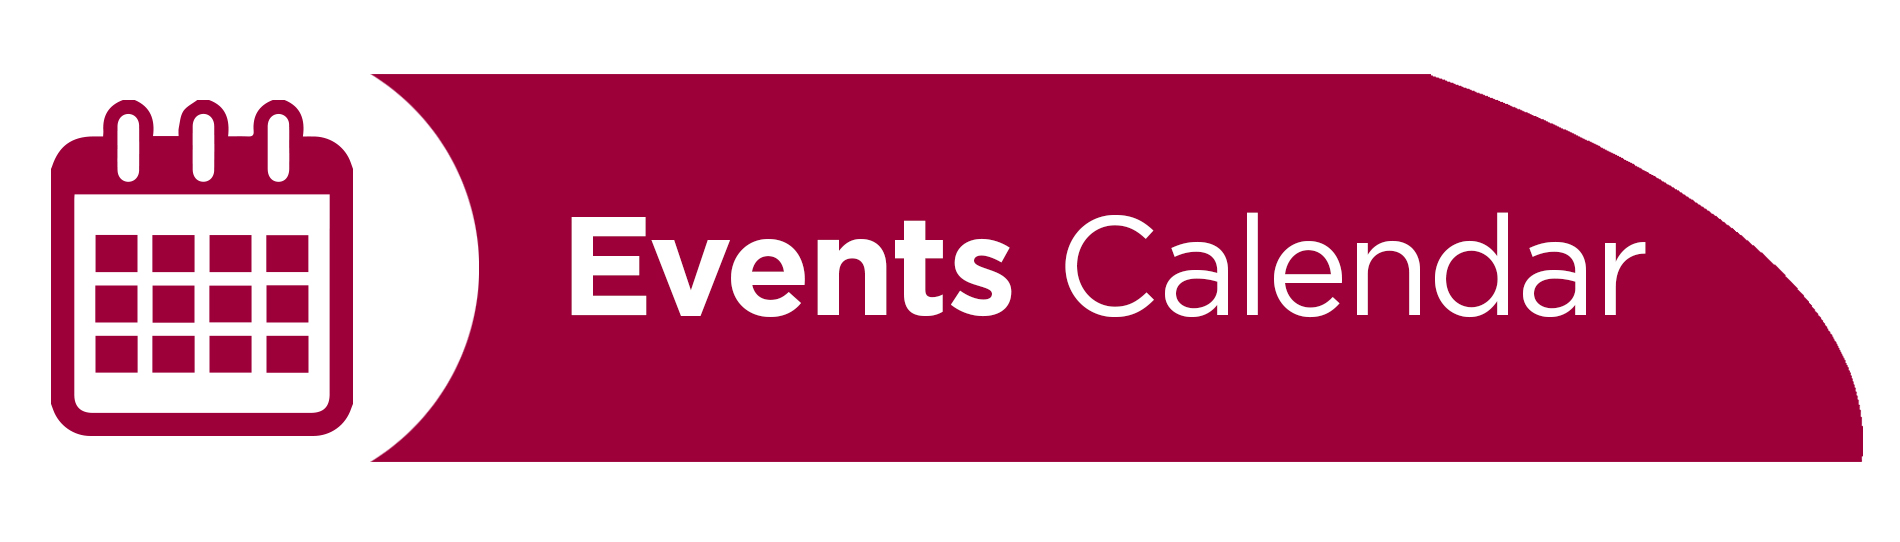 Events Calendar Banner